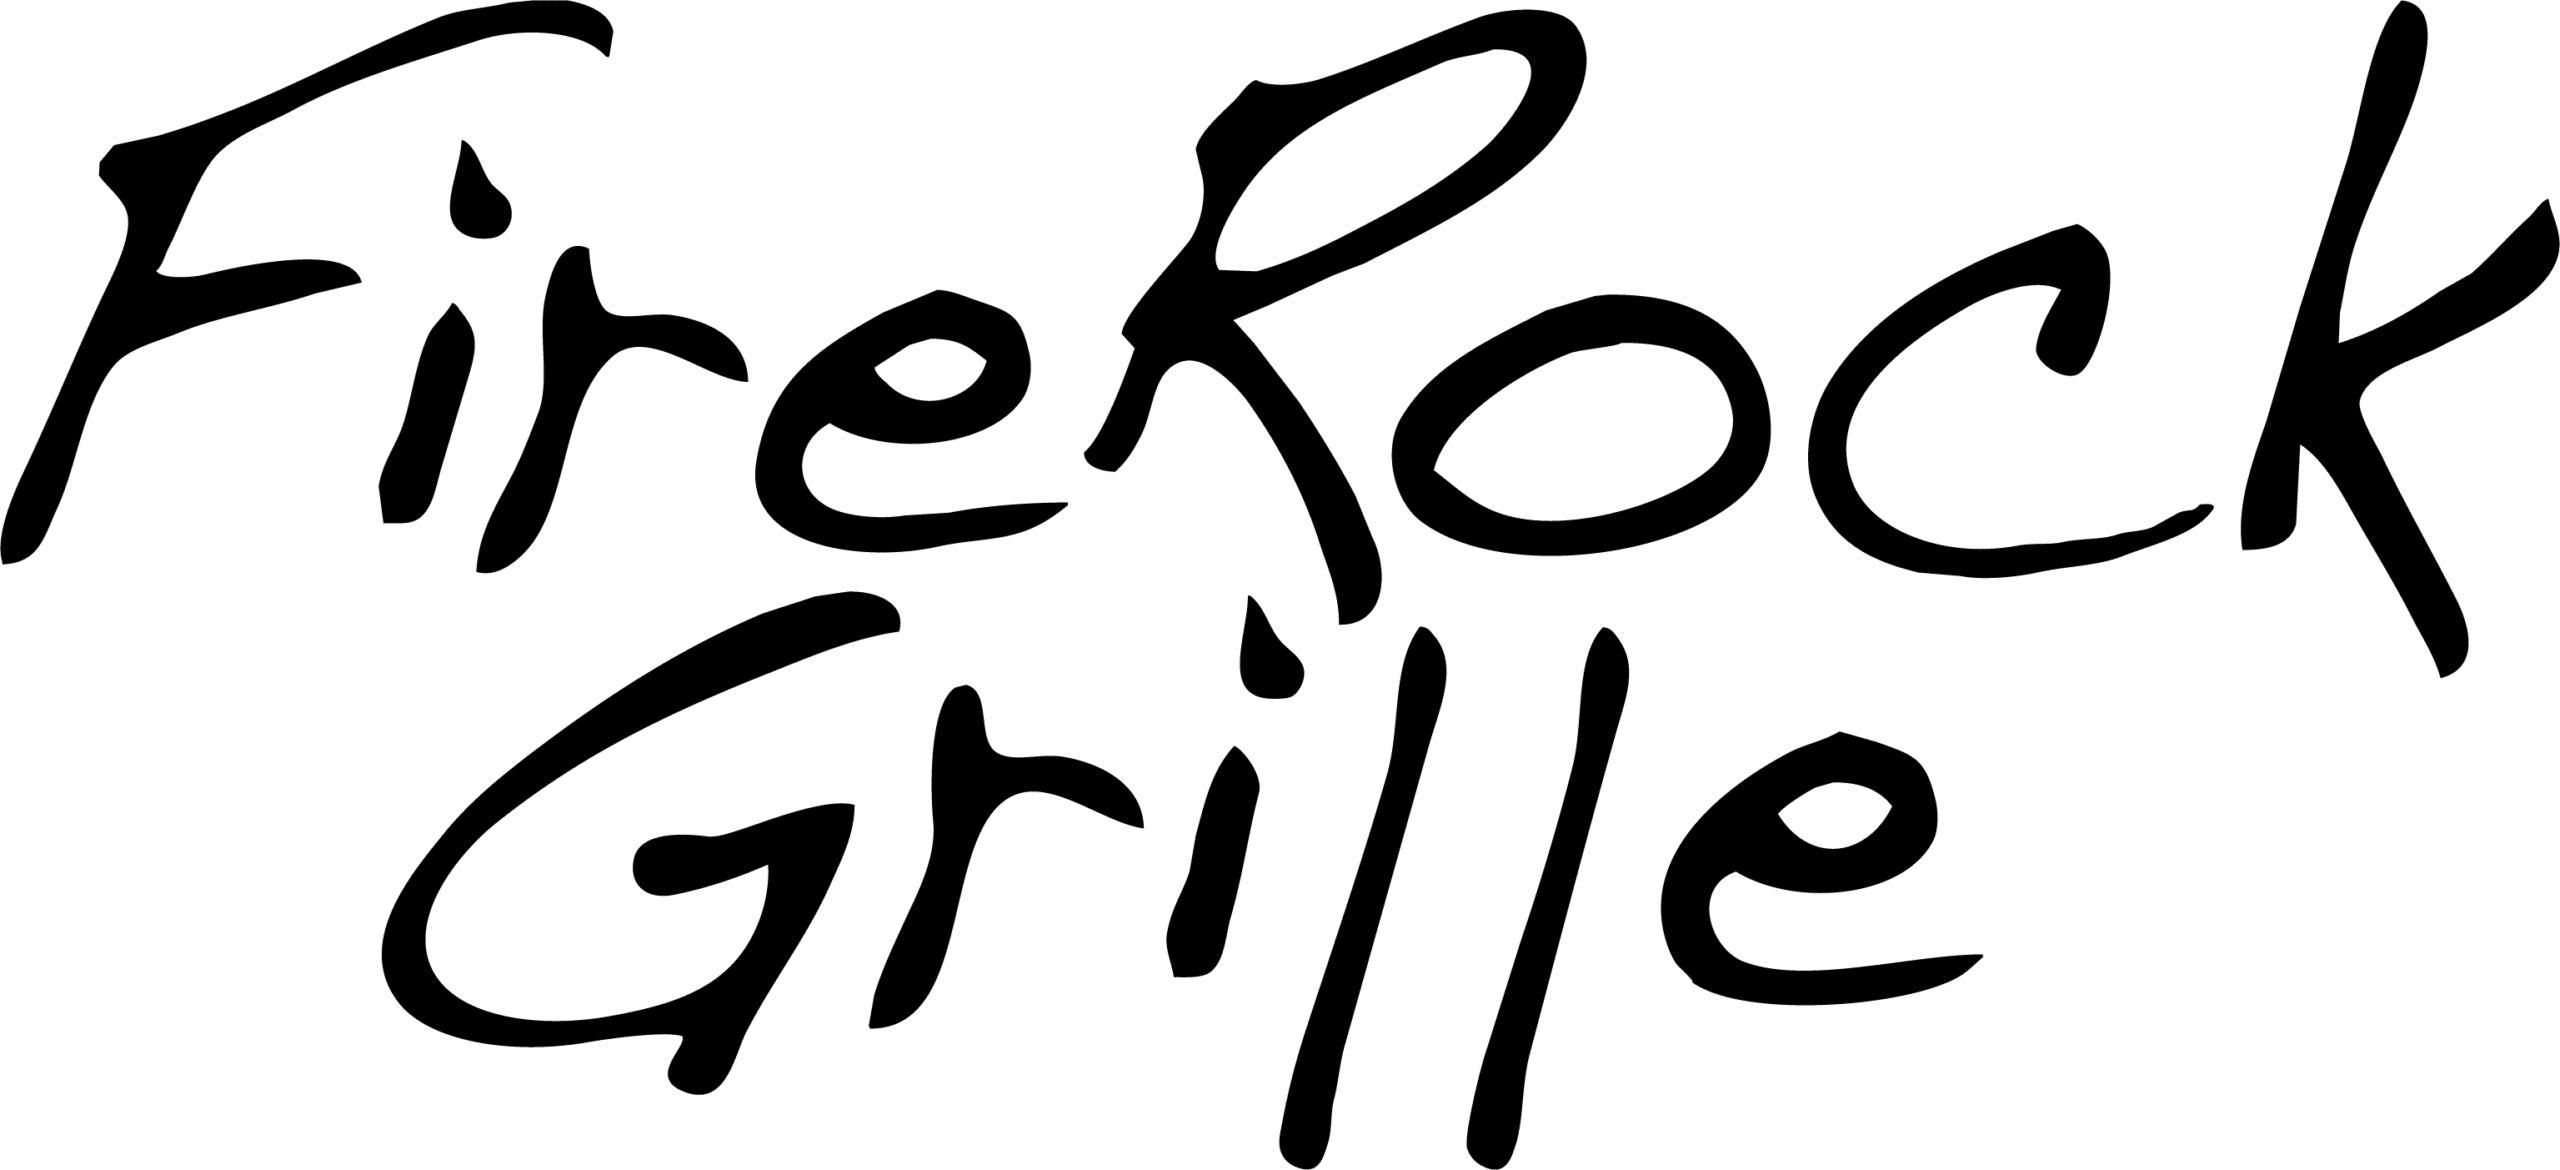 FireRock Grille